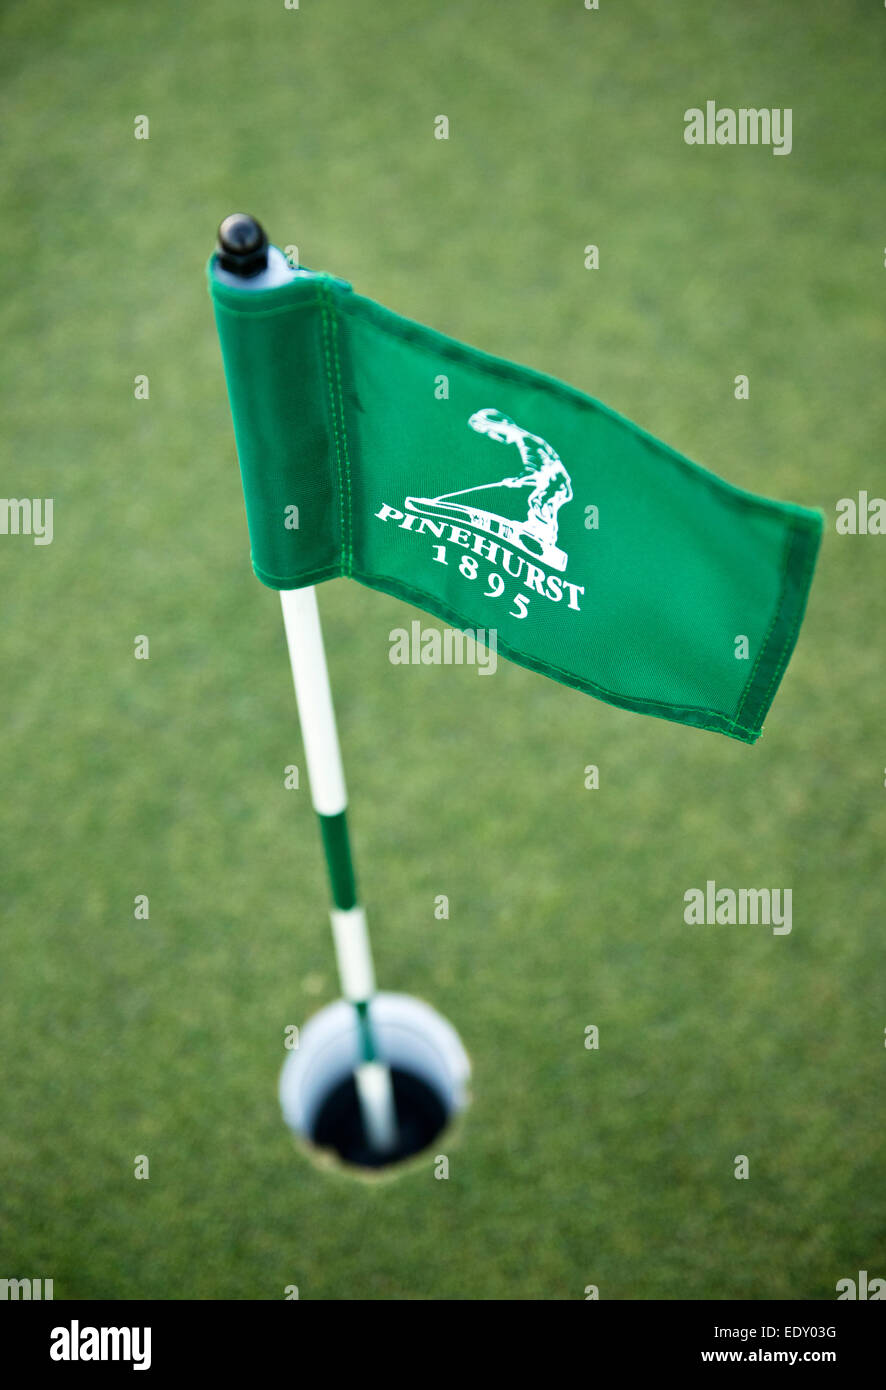 Pinehurst Golf practice putting green flag Banque D'Images